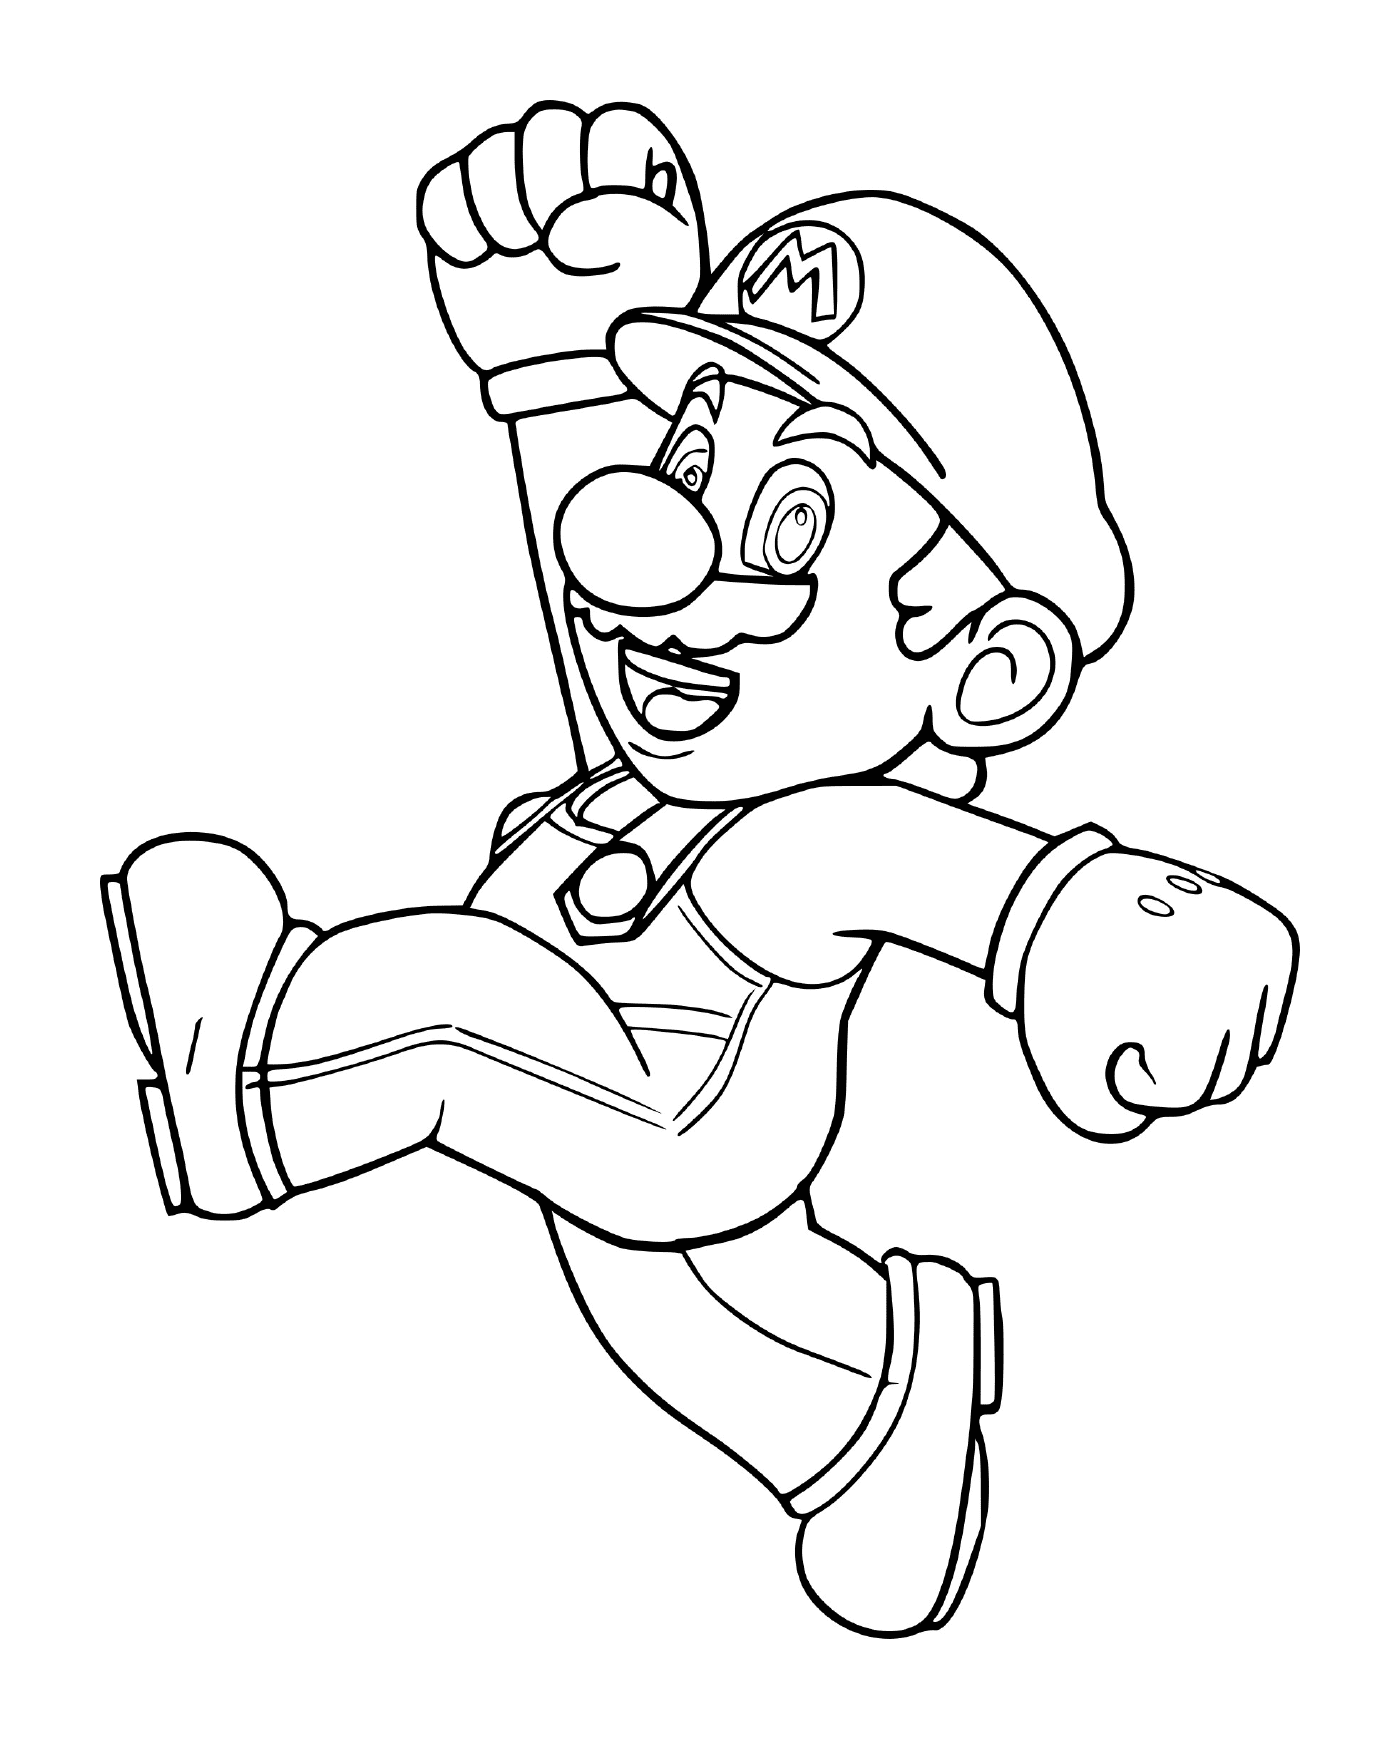  Mario Bros originale, un uomo che corre 